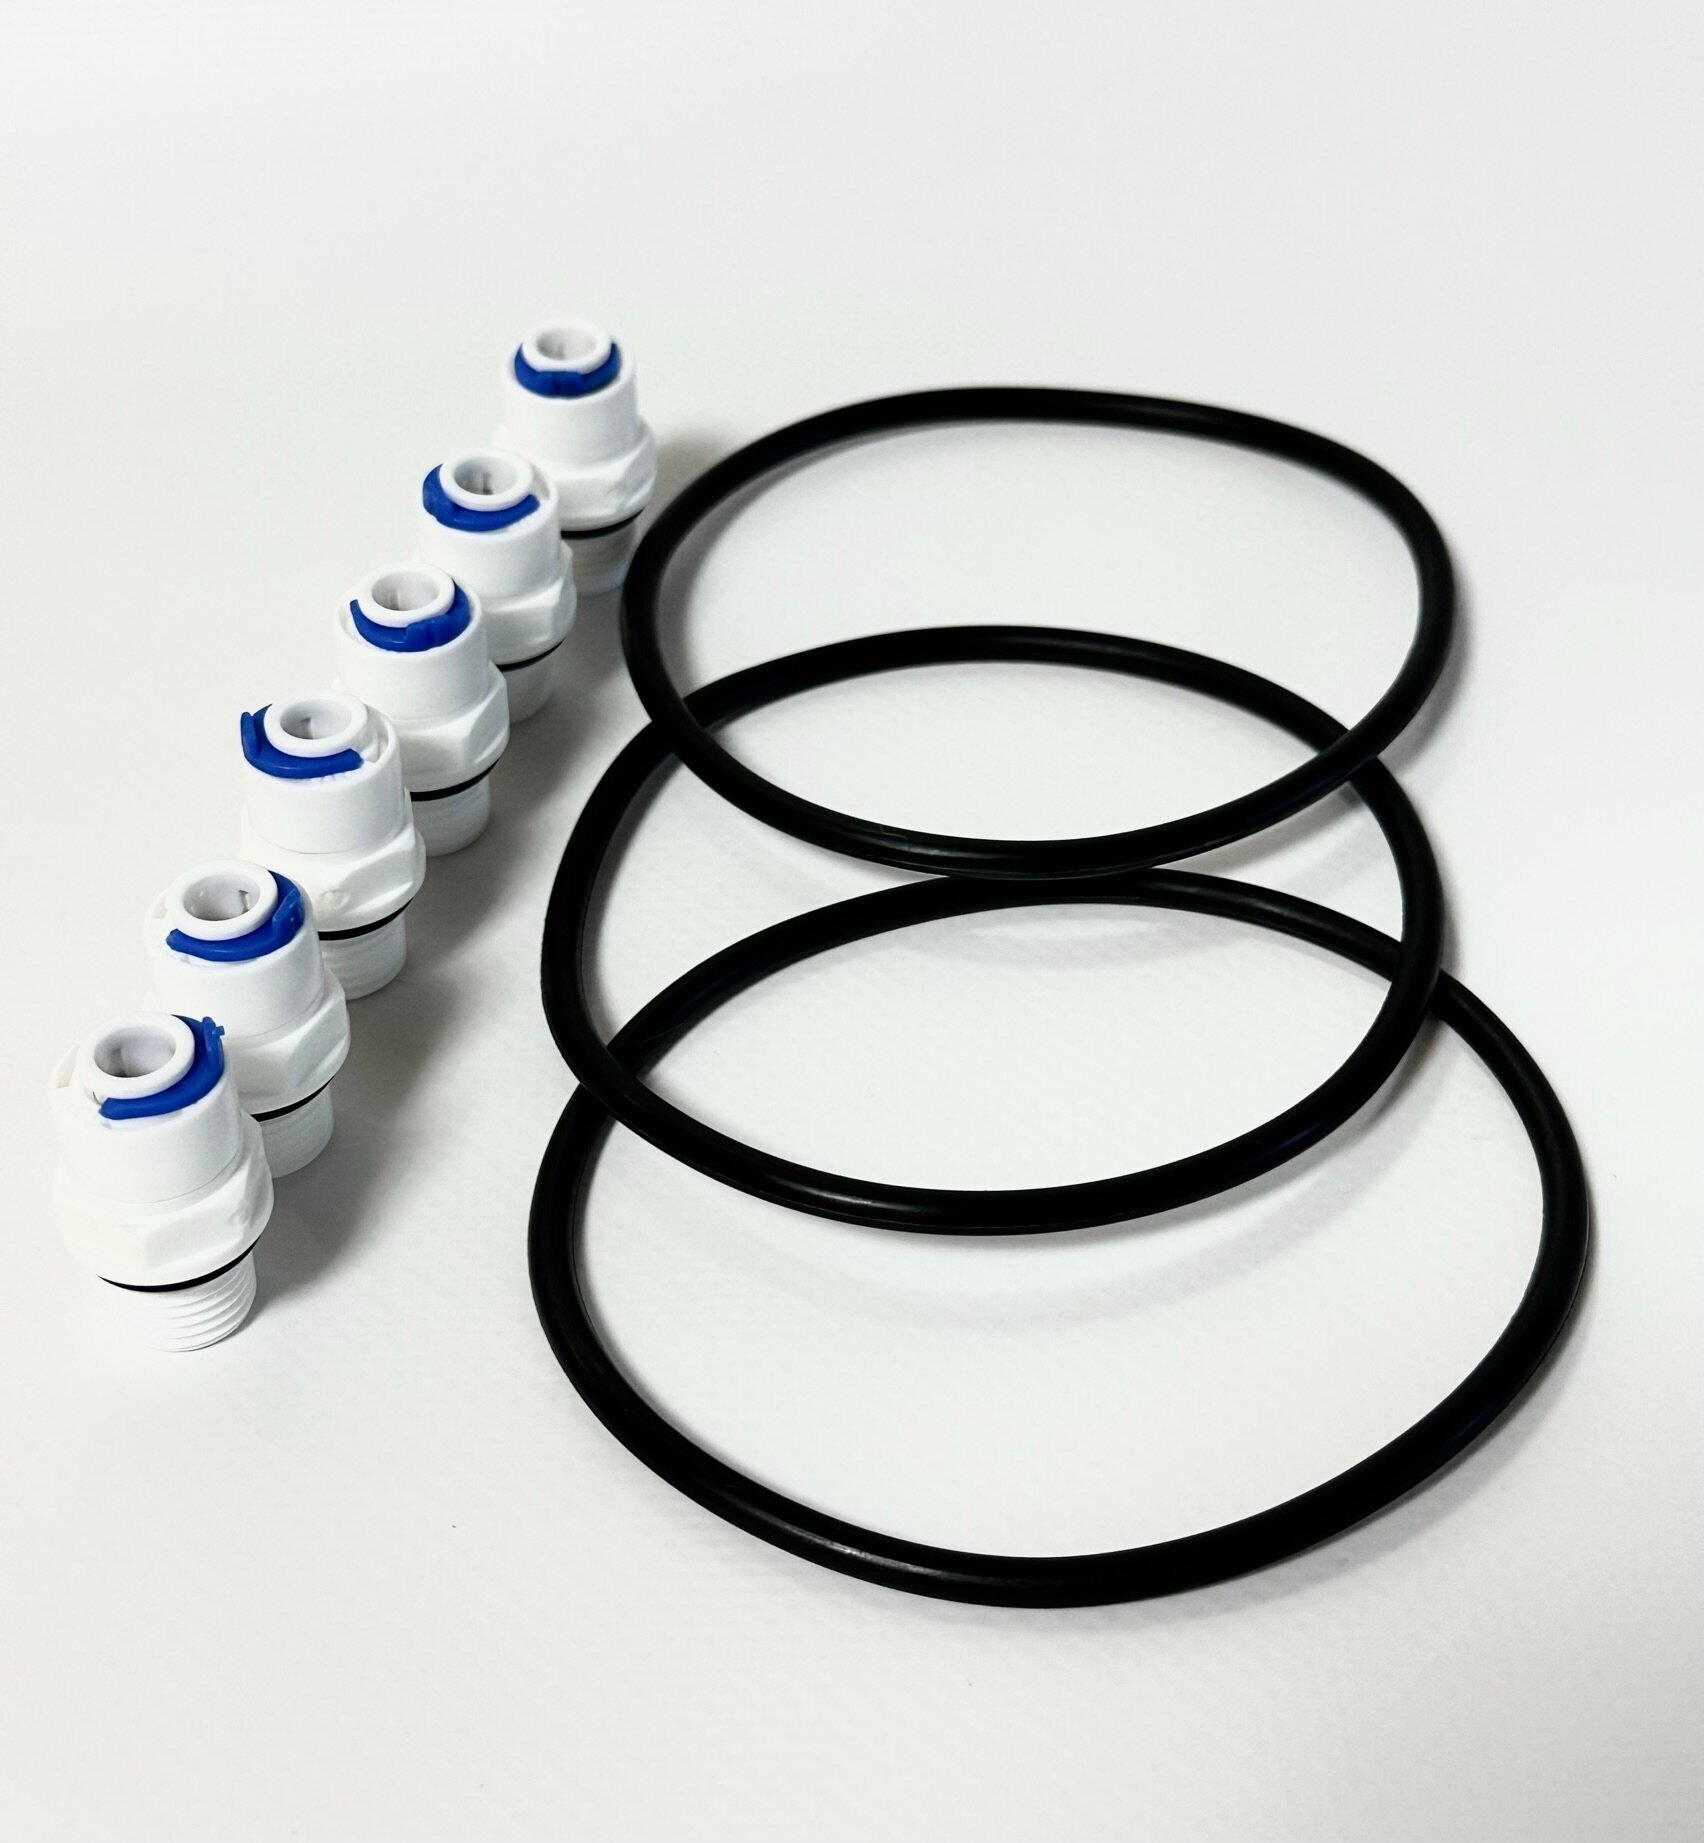 Уплотнительное кольцо (прокладка) для колб фильтра размера Slim Line 10 - 3 шт. + 6 фитингов 1/4 - фотография № 3